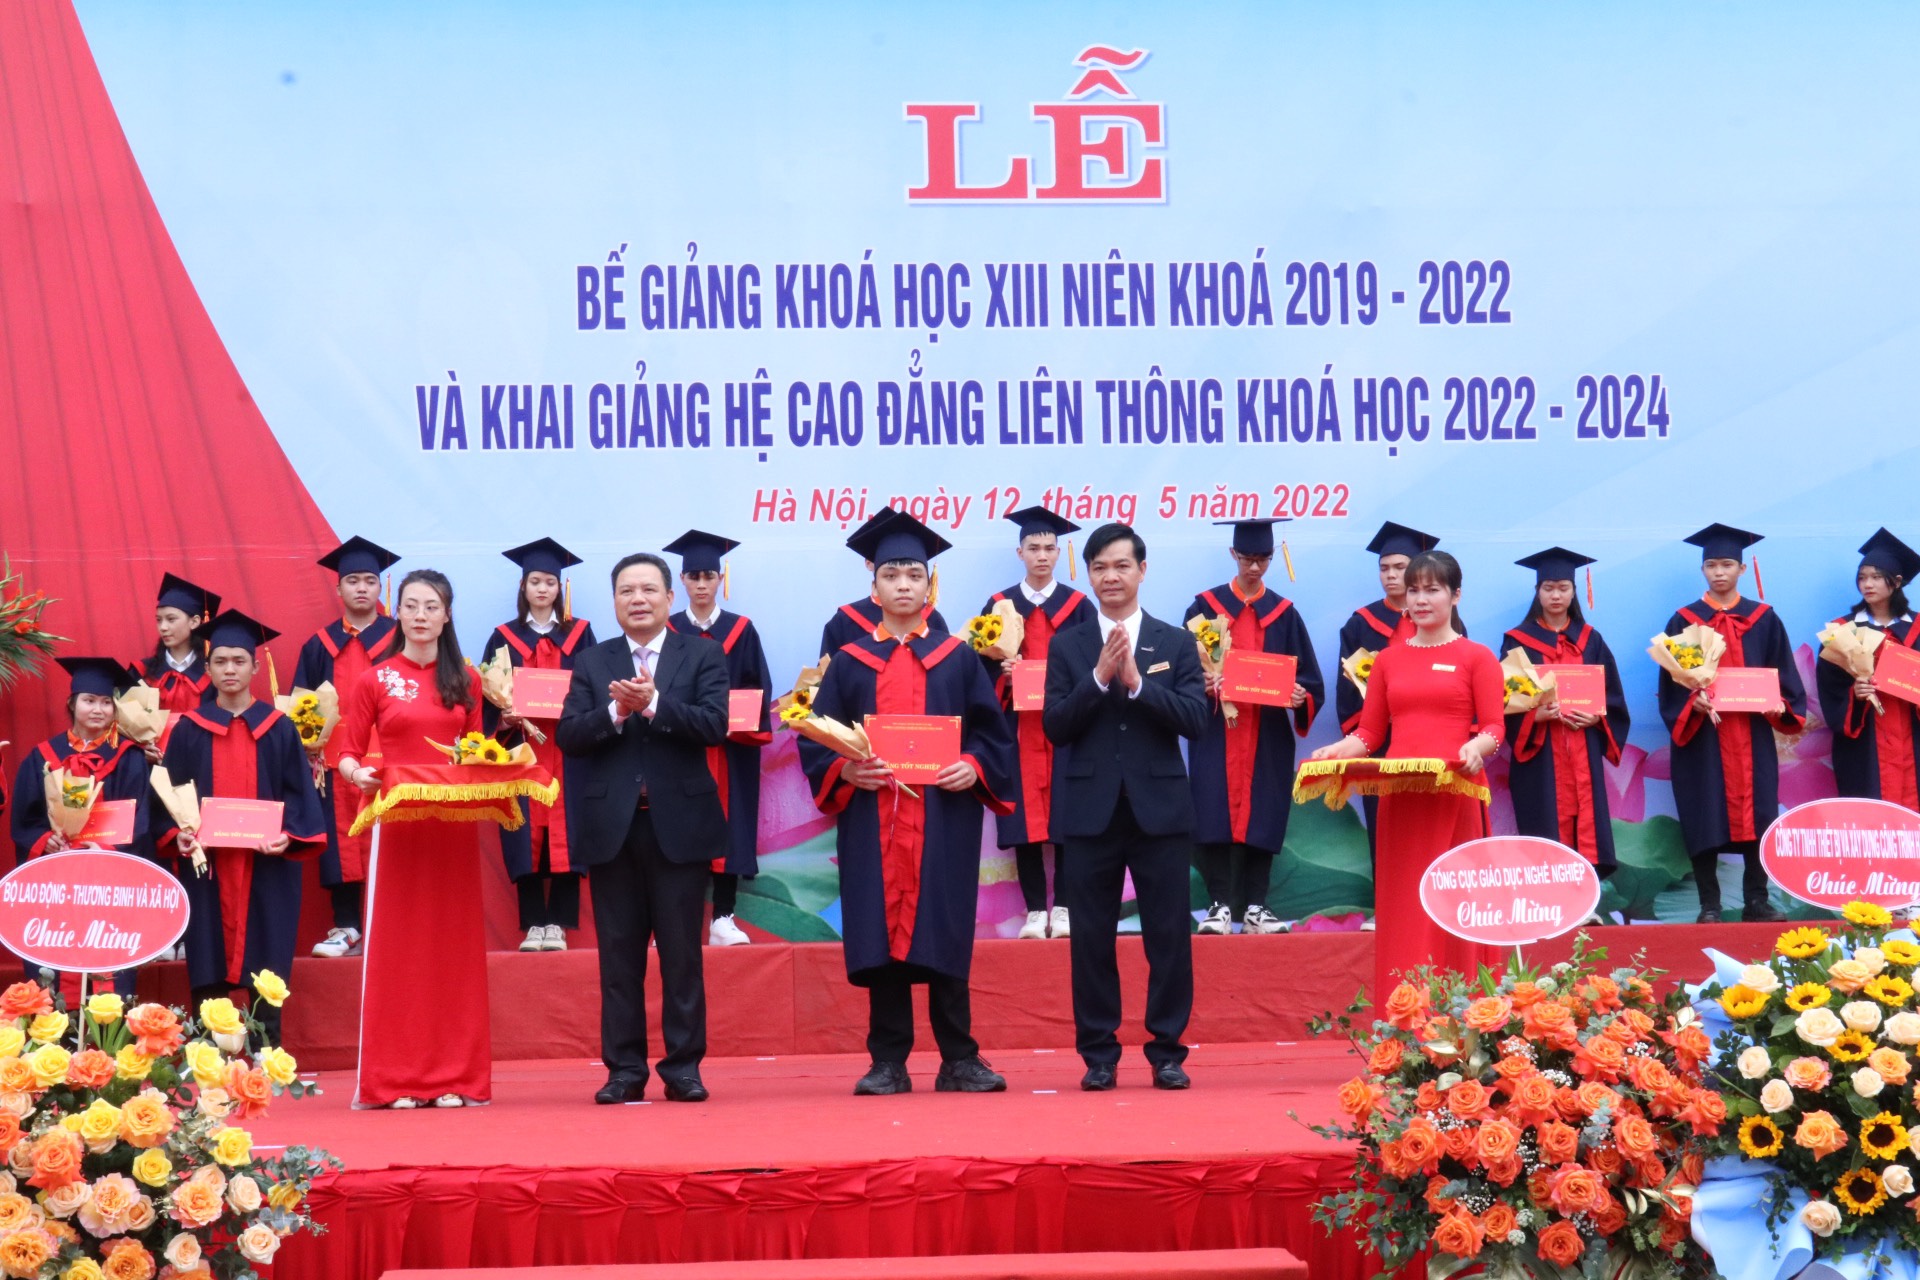 Thứ trưởng Lê Văn Thanh: Chuyển đổi số mạnh mẽ trong công tác đào tạo để sớm trở thành Trung tâm Quốc gia đào tạo và thực hành nghề chất lượng cao